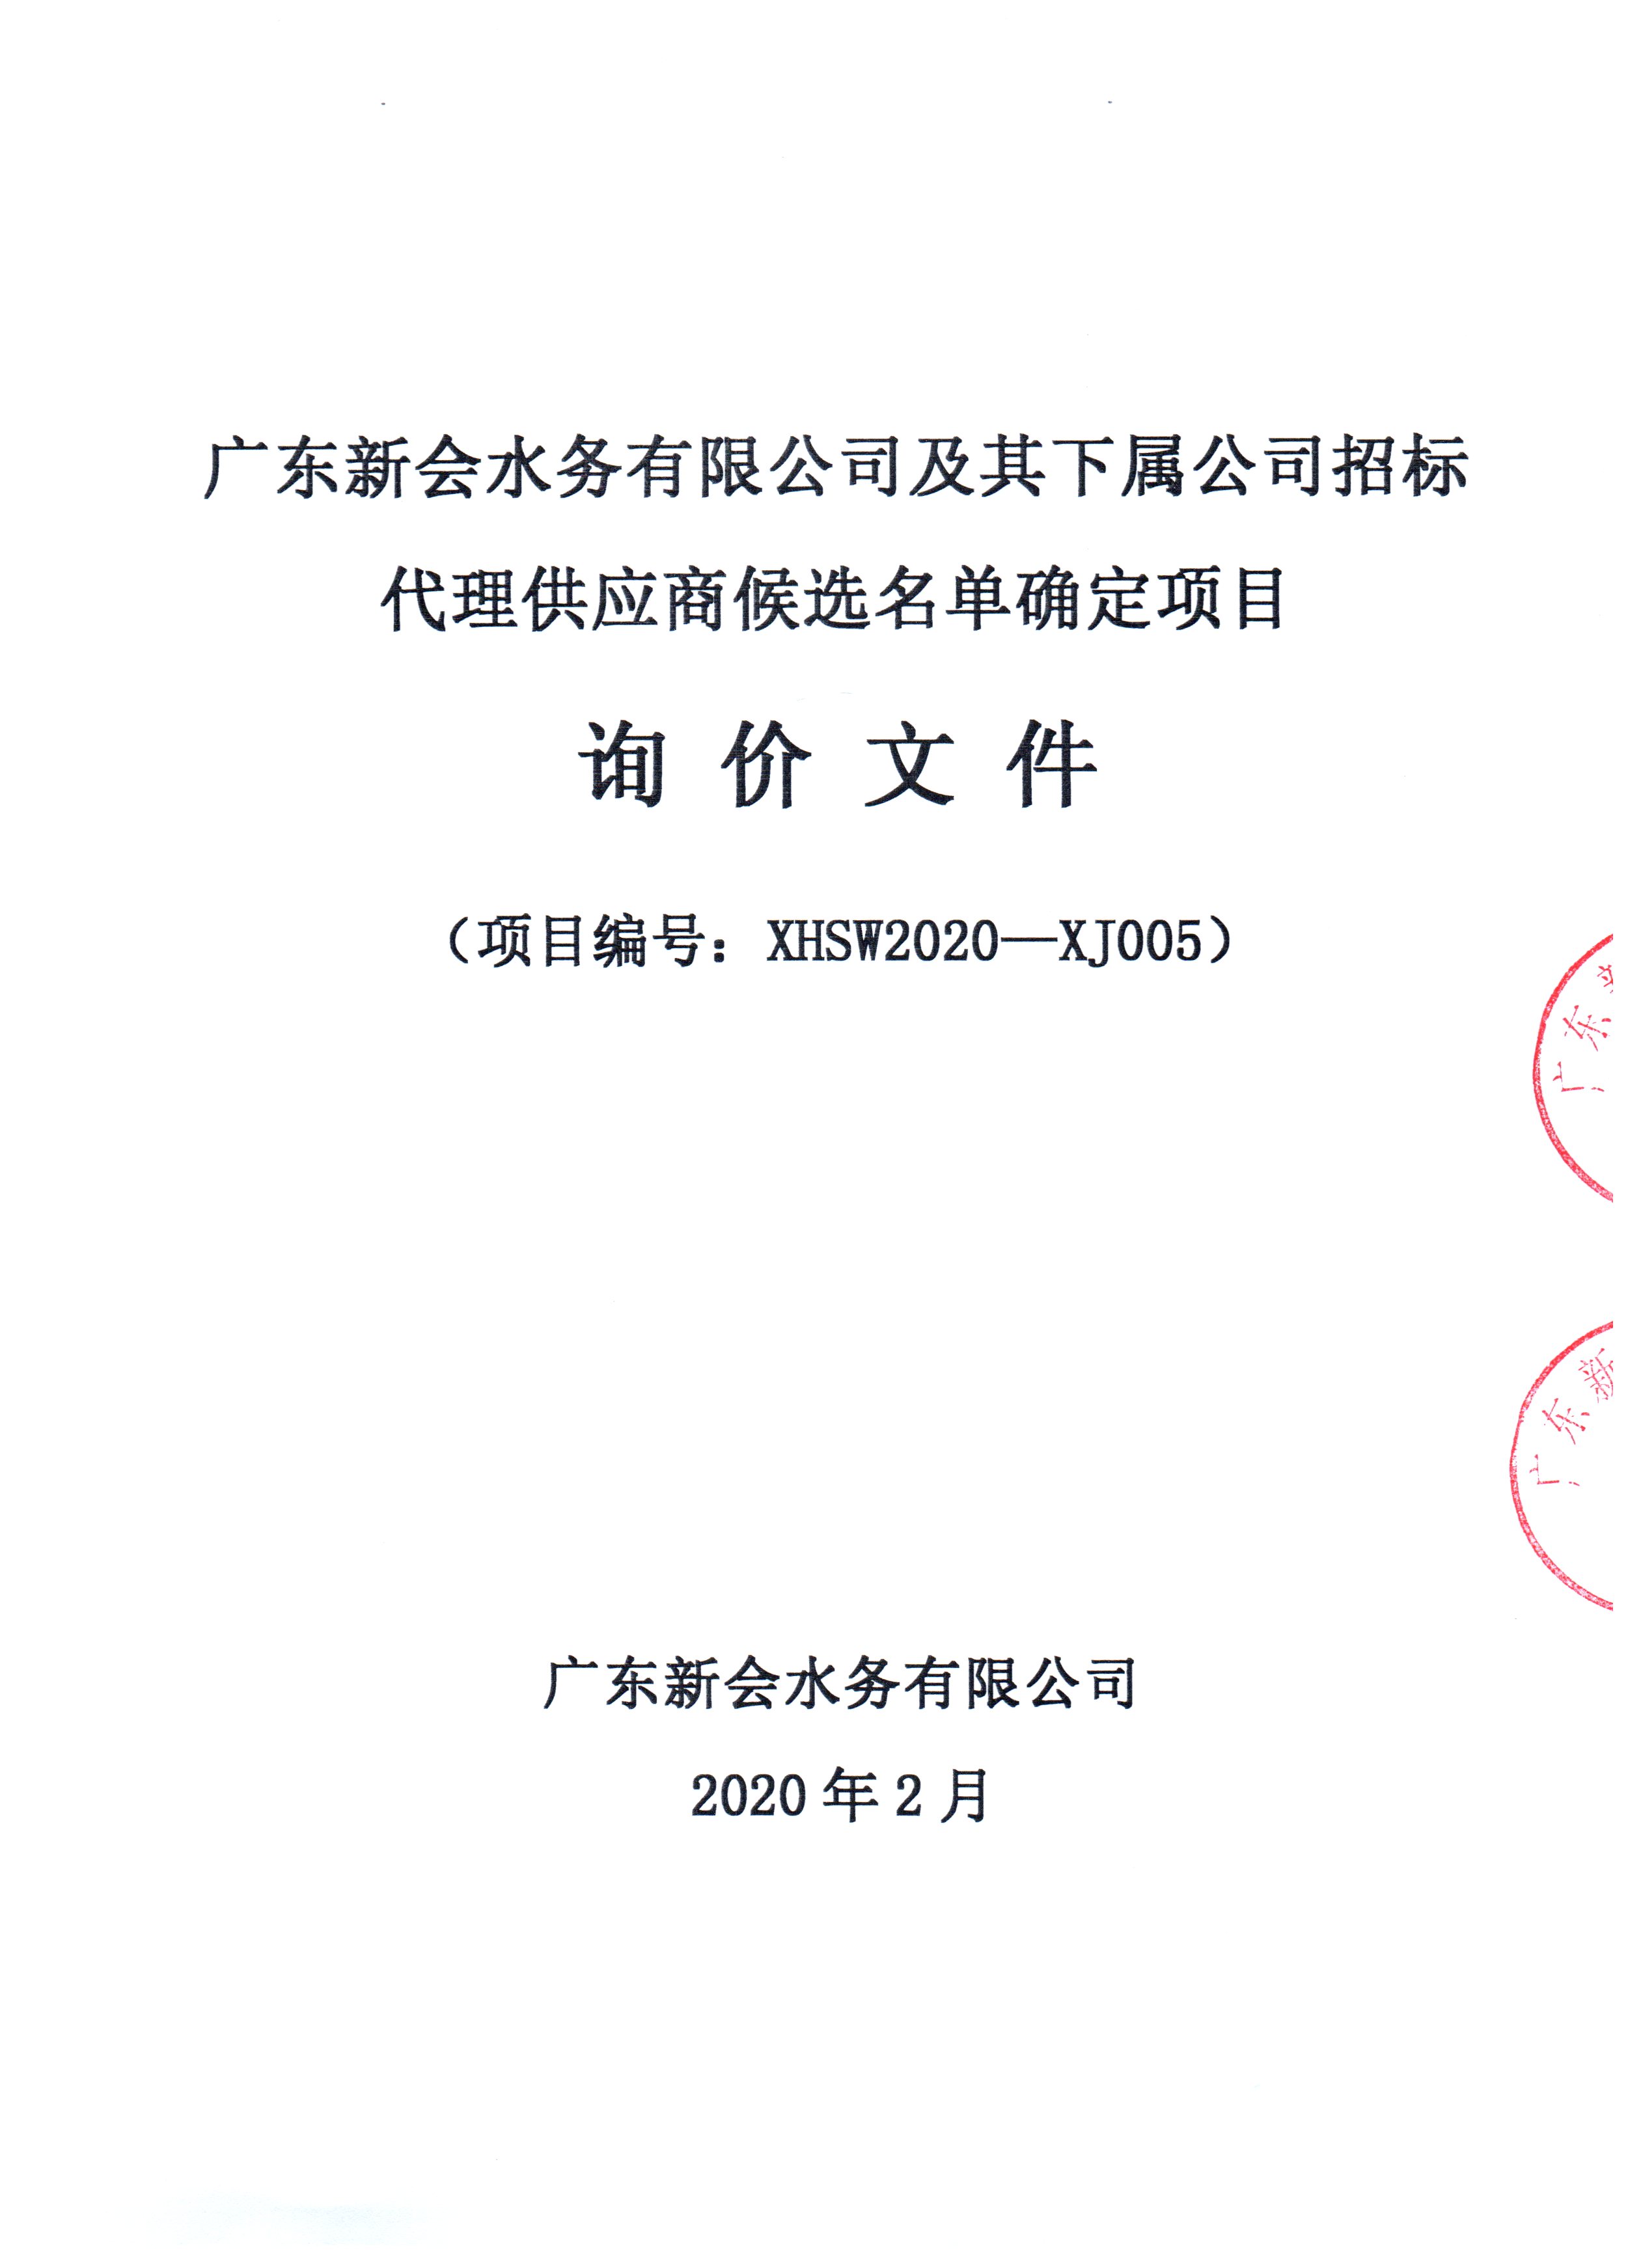 关于广东新会水务公司及其下属公司招标代理供应商候选名单确定项目的公告图1.jpg